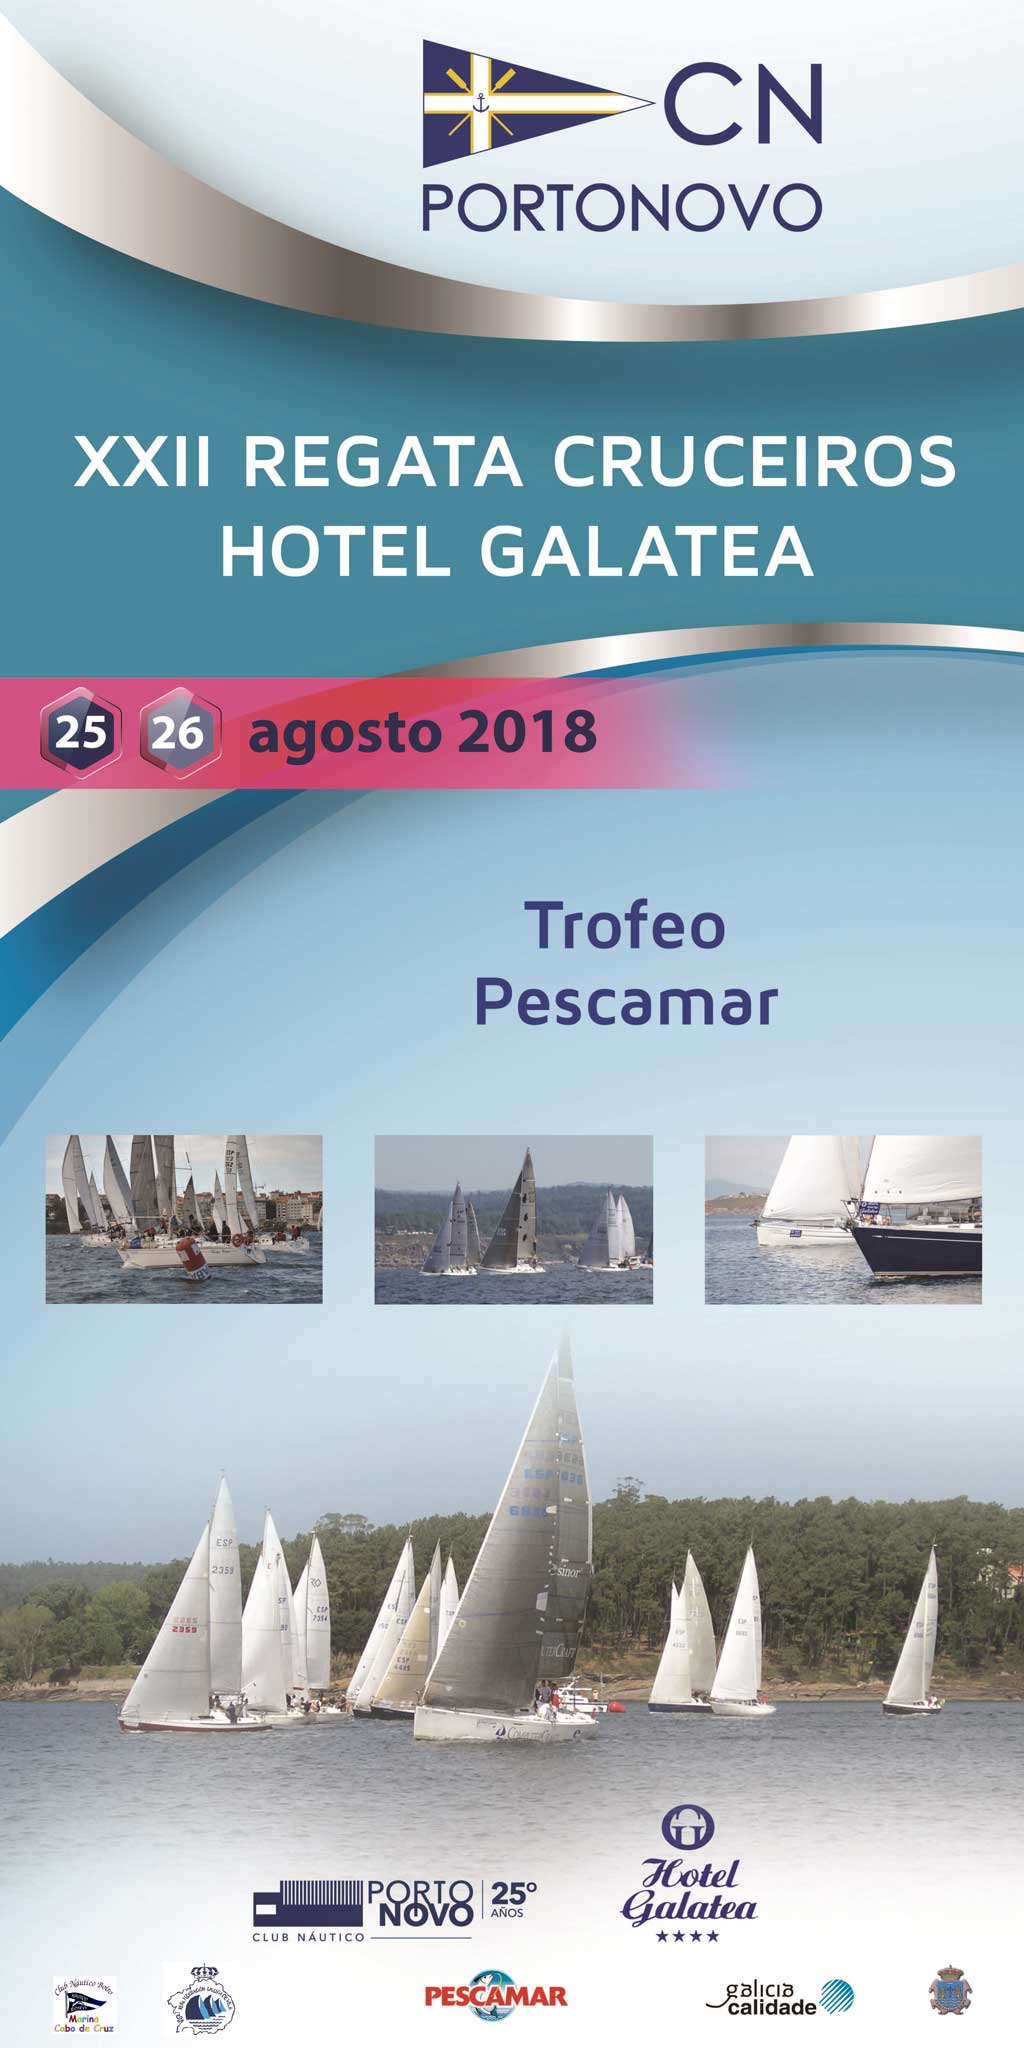 XXII Regata cruceiros Hotel Galatea